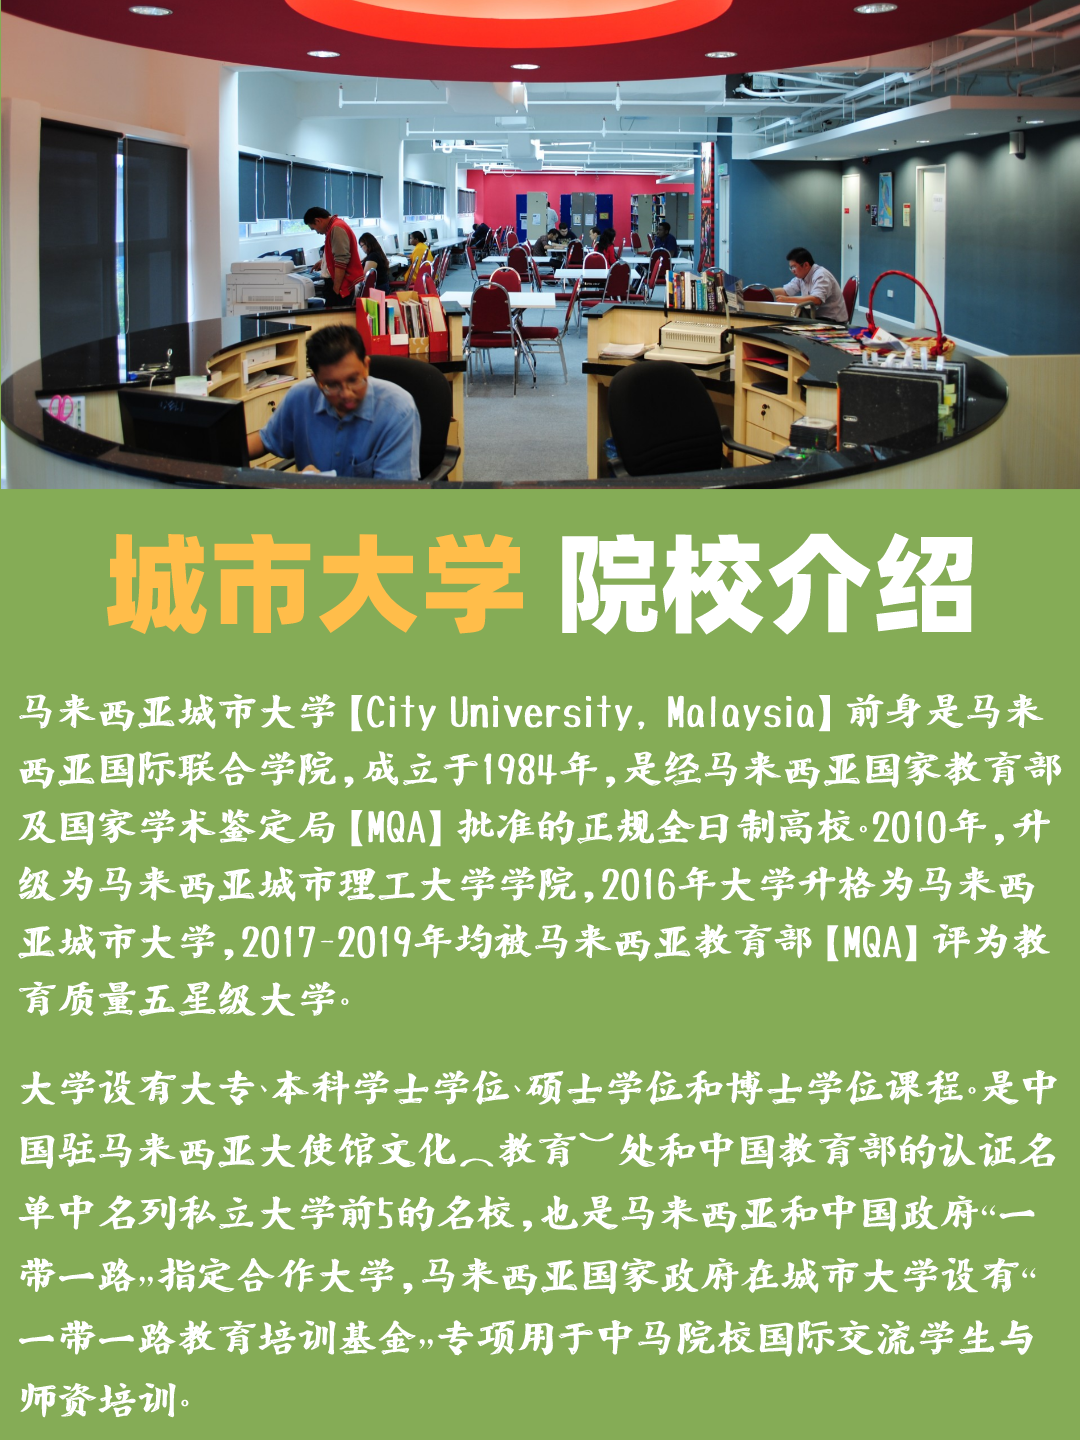 马来西亚城市大学一年制mba硕士项目